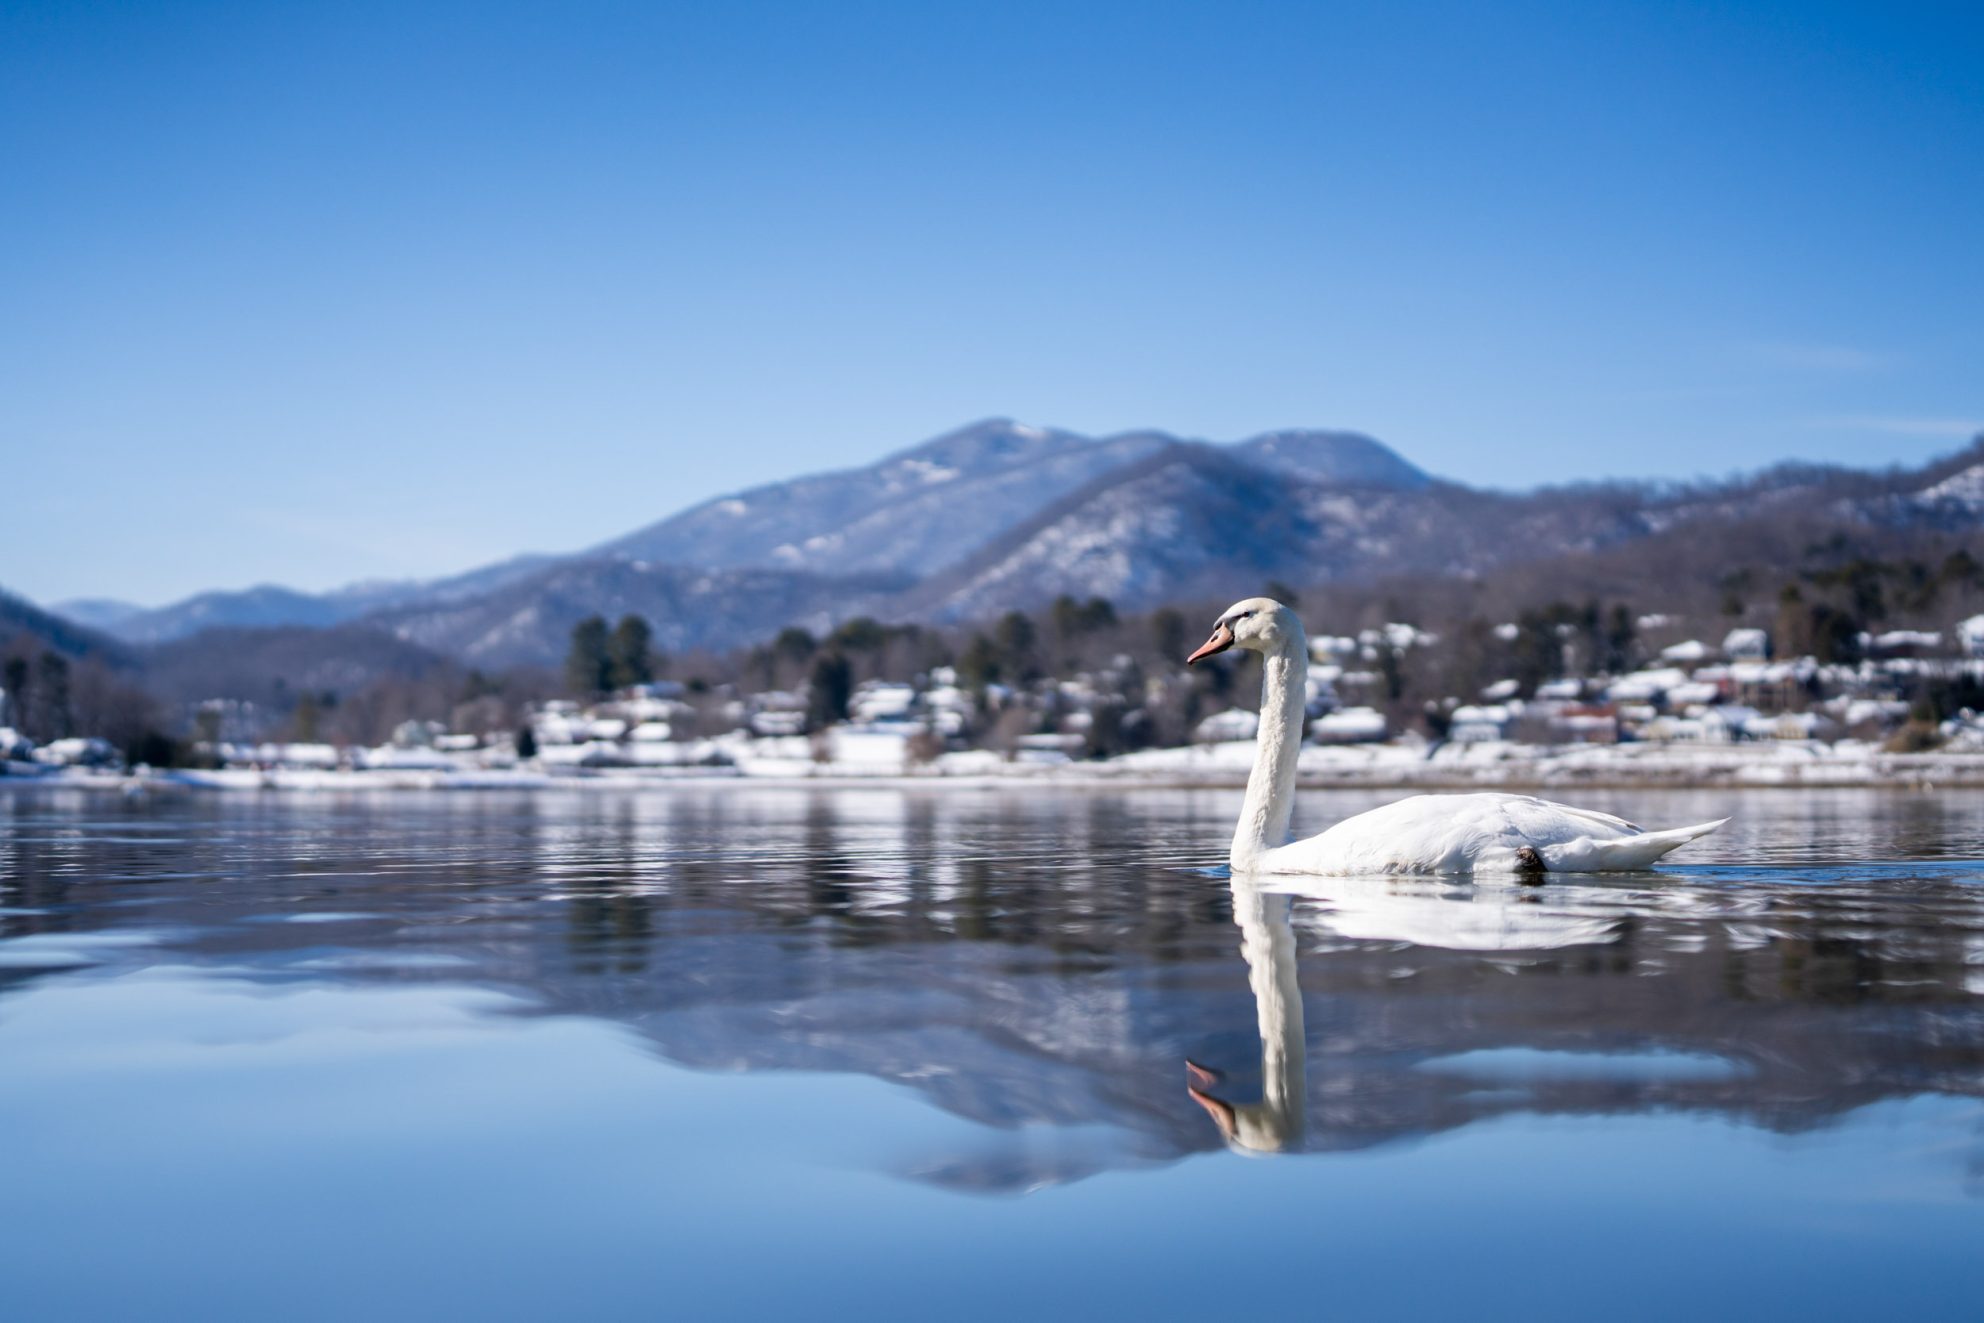 Swan crosses the lake on a snowy winter day at Lake Junaluska